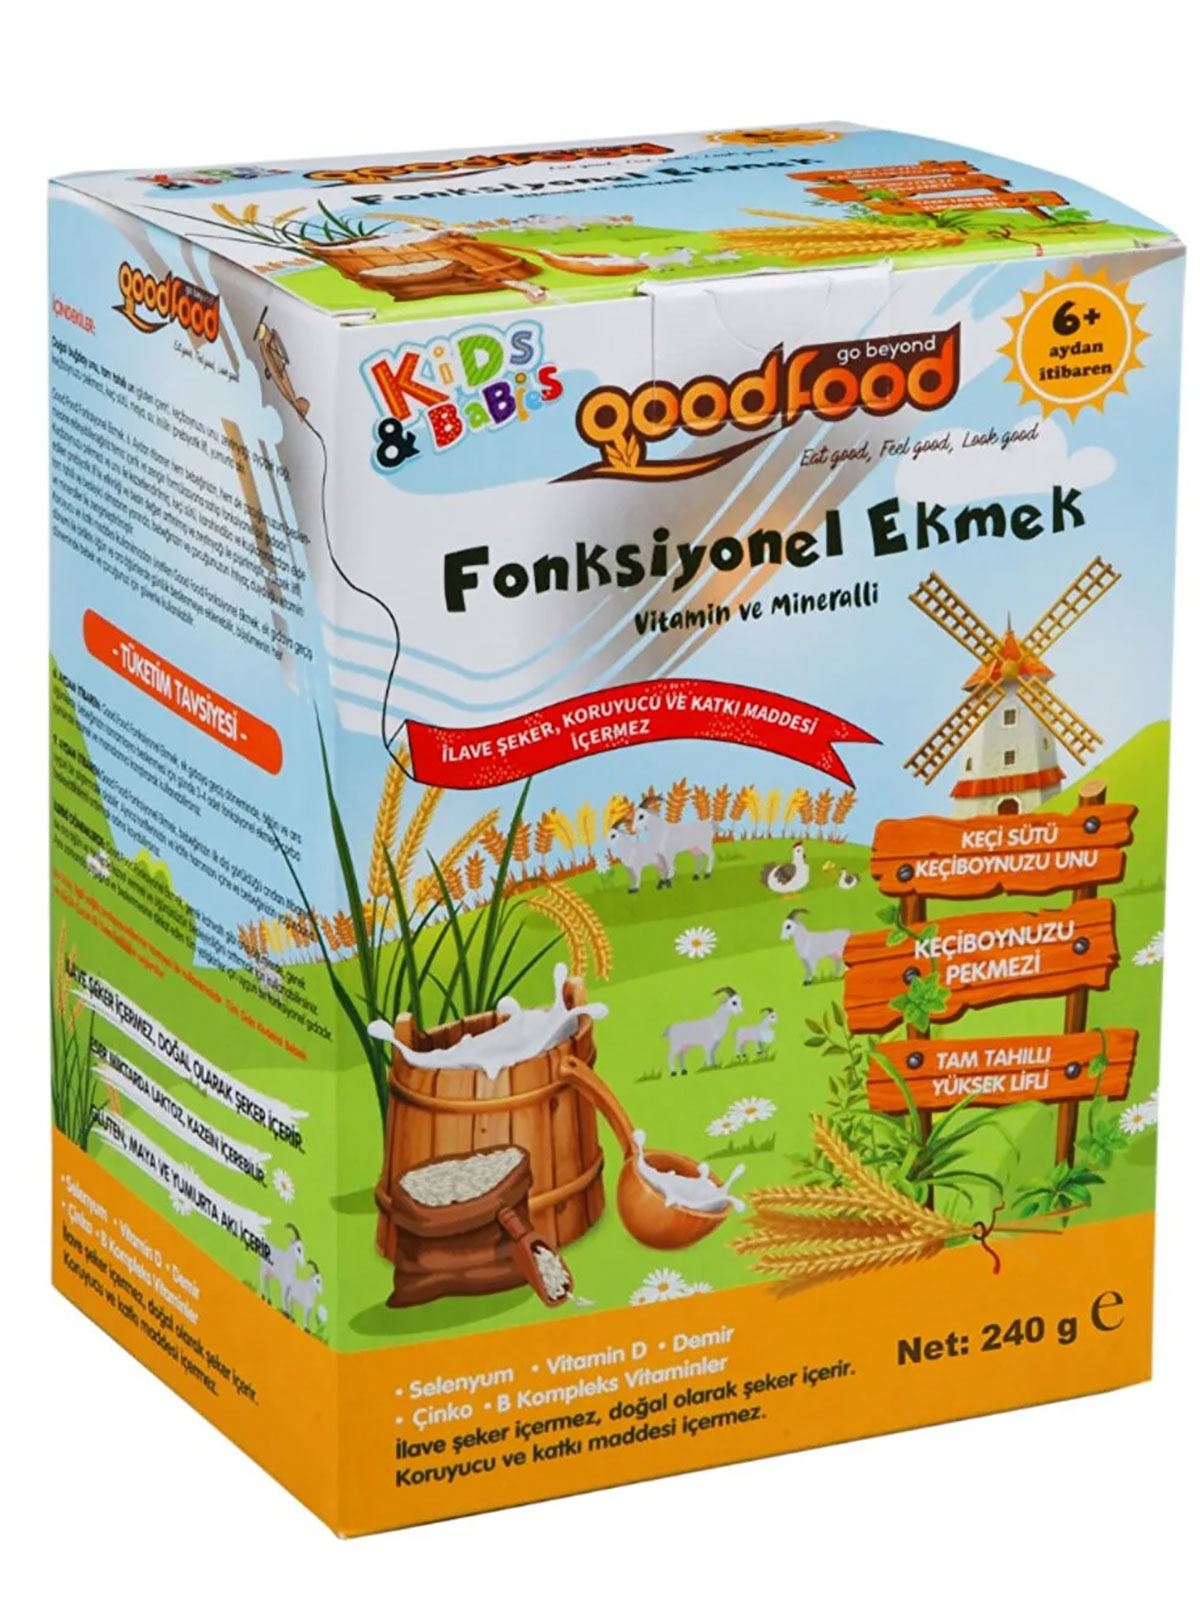 Good Food Functional Ekmek 240 gr